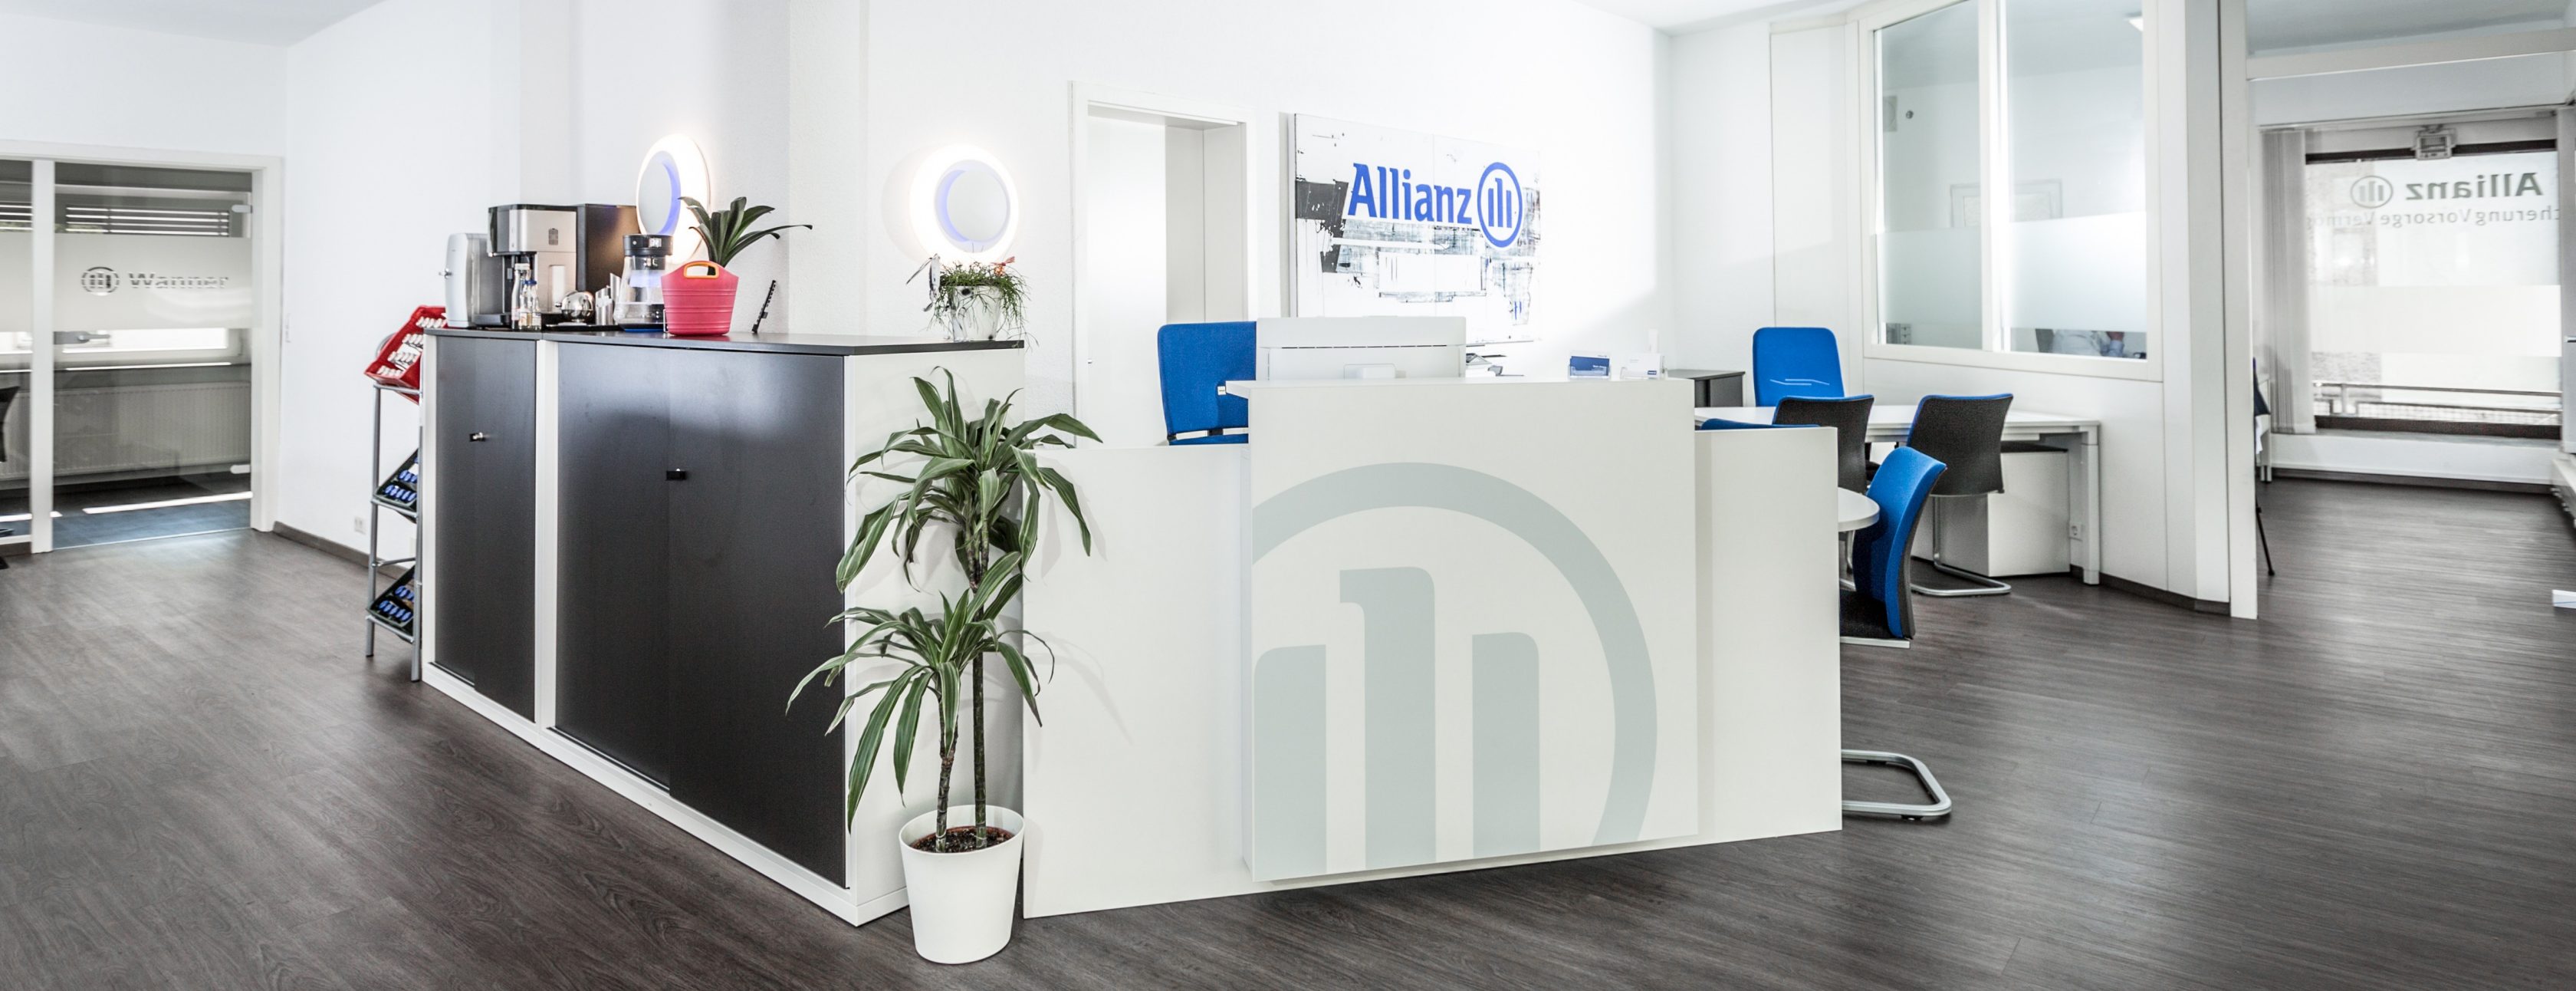 Allianz Versicherung Johann Wanner Geislingen - Titelbild